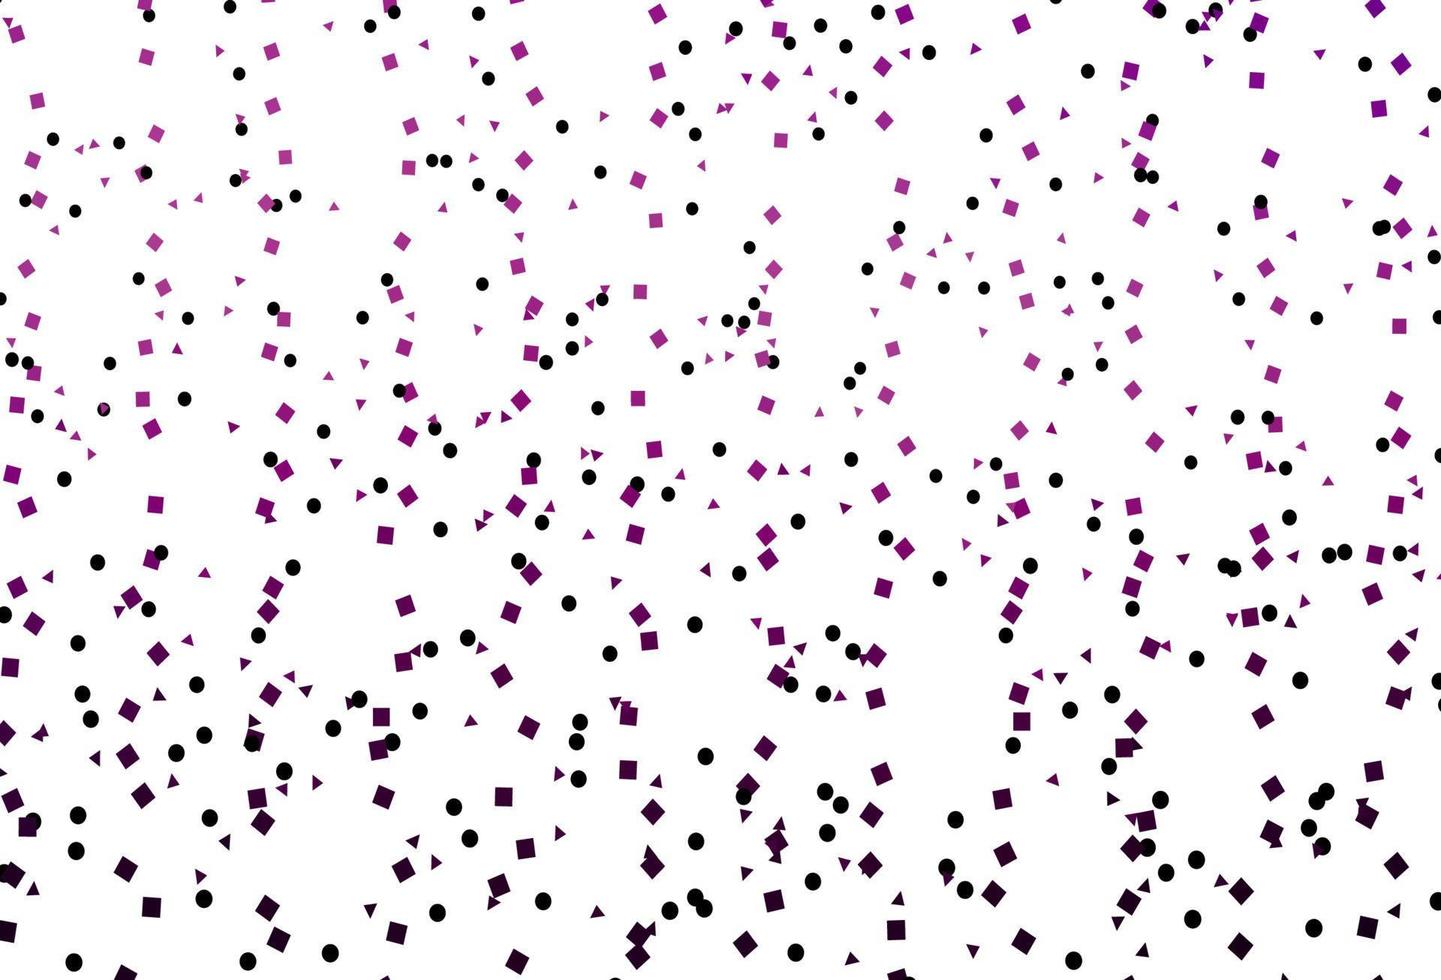 padrão de vetor roxo claro em estilo poligonal com círculos.